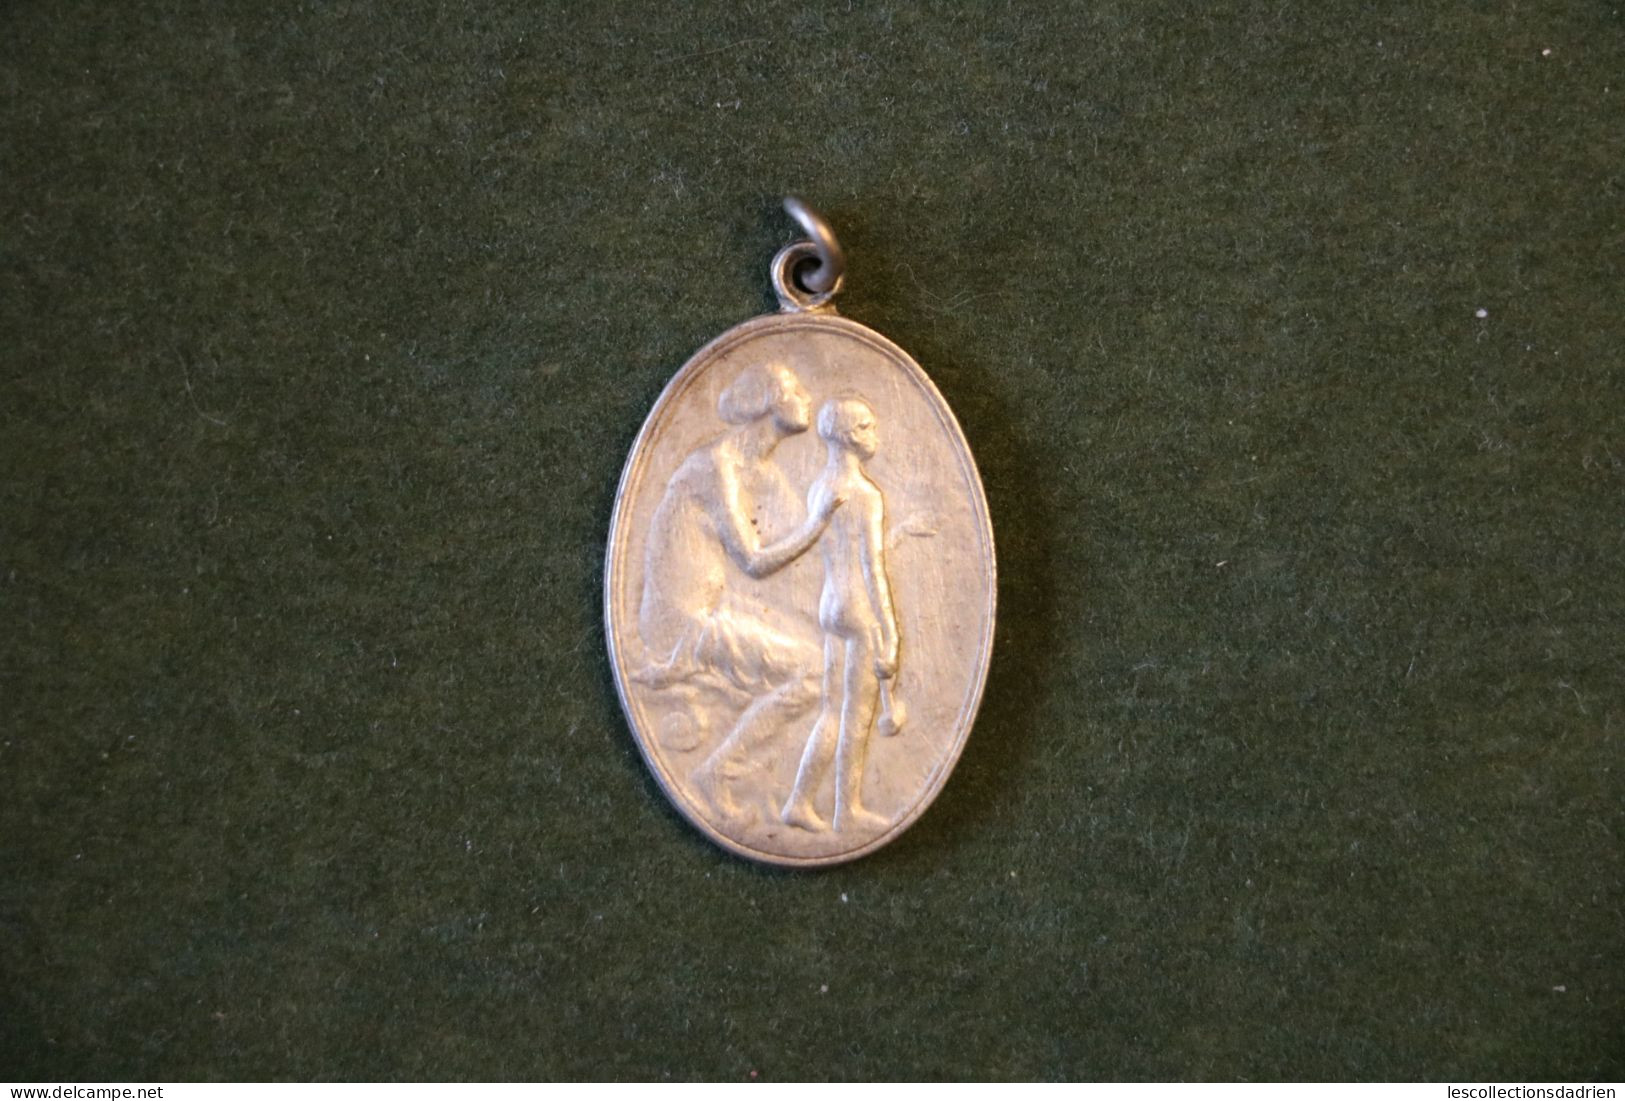 Médaille oeuvre nationale des orphelins de guerre 14-18 - Belgian medal wwi - médaillette - journée -  Carlens